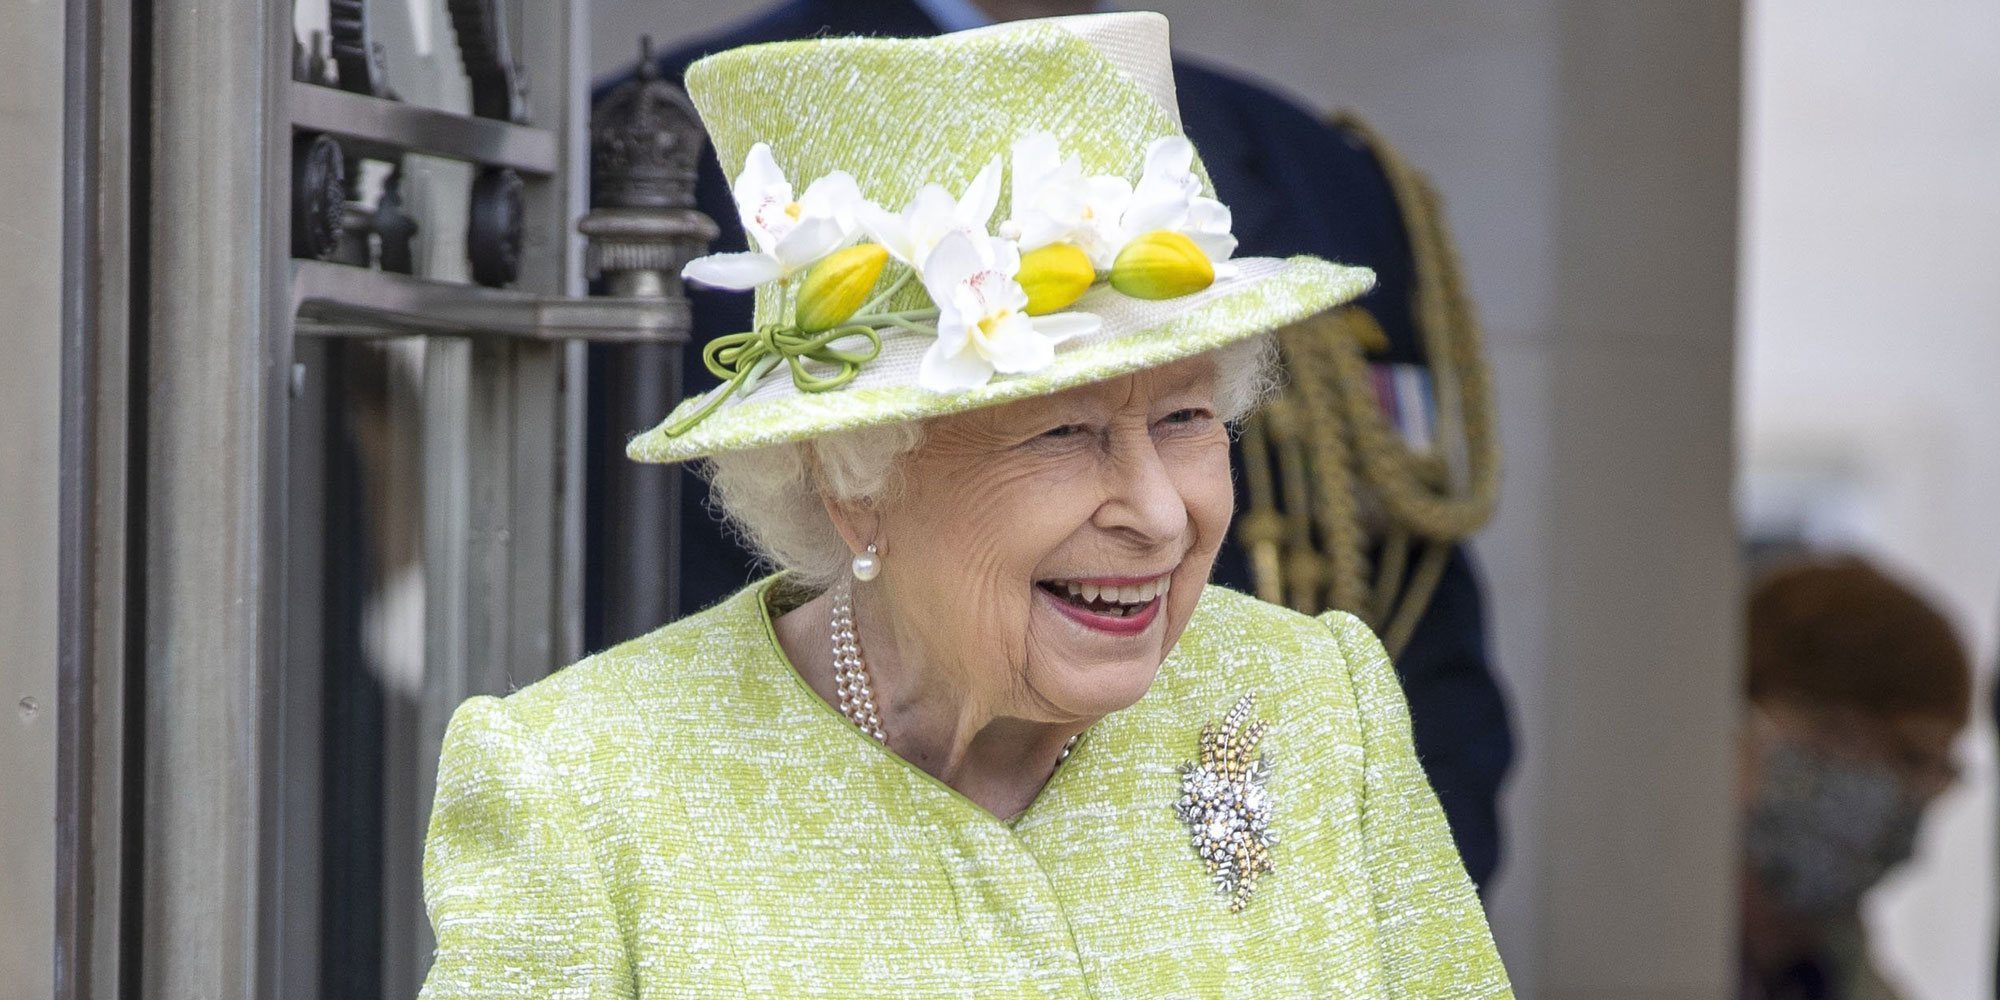 La Reina Isabel dice adiós al luto en su vuelta a los actos oficiales tras el funeral del Duque de Edimburgo